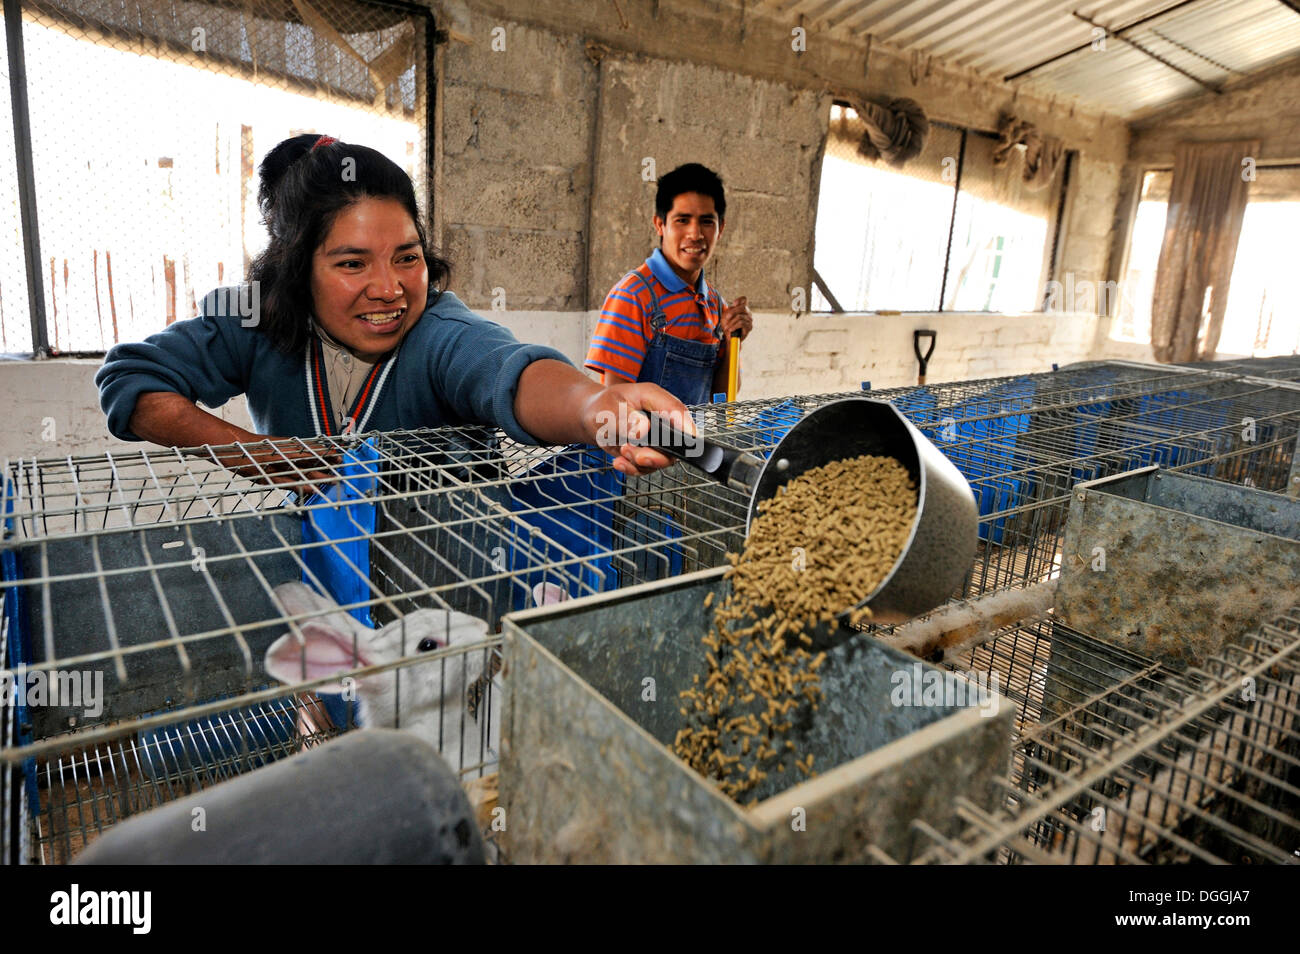 Jeune femme se nourrir les lapins dans les installations d'élevage de lapin pour la mobilité, Mateo Quinto, Puebla, Mexique, Amérique Centrale Banque D'Images